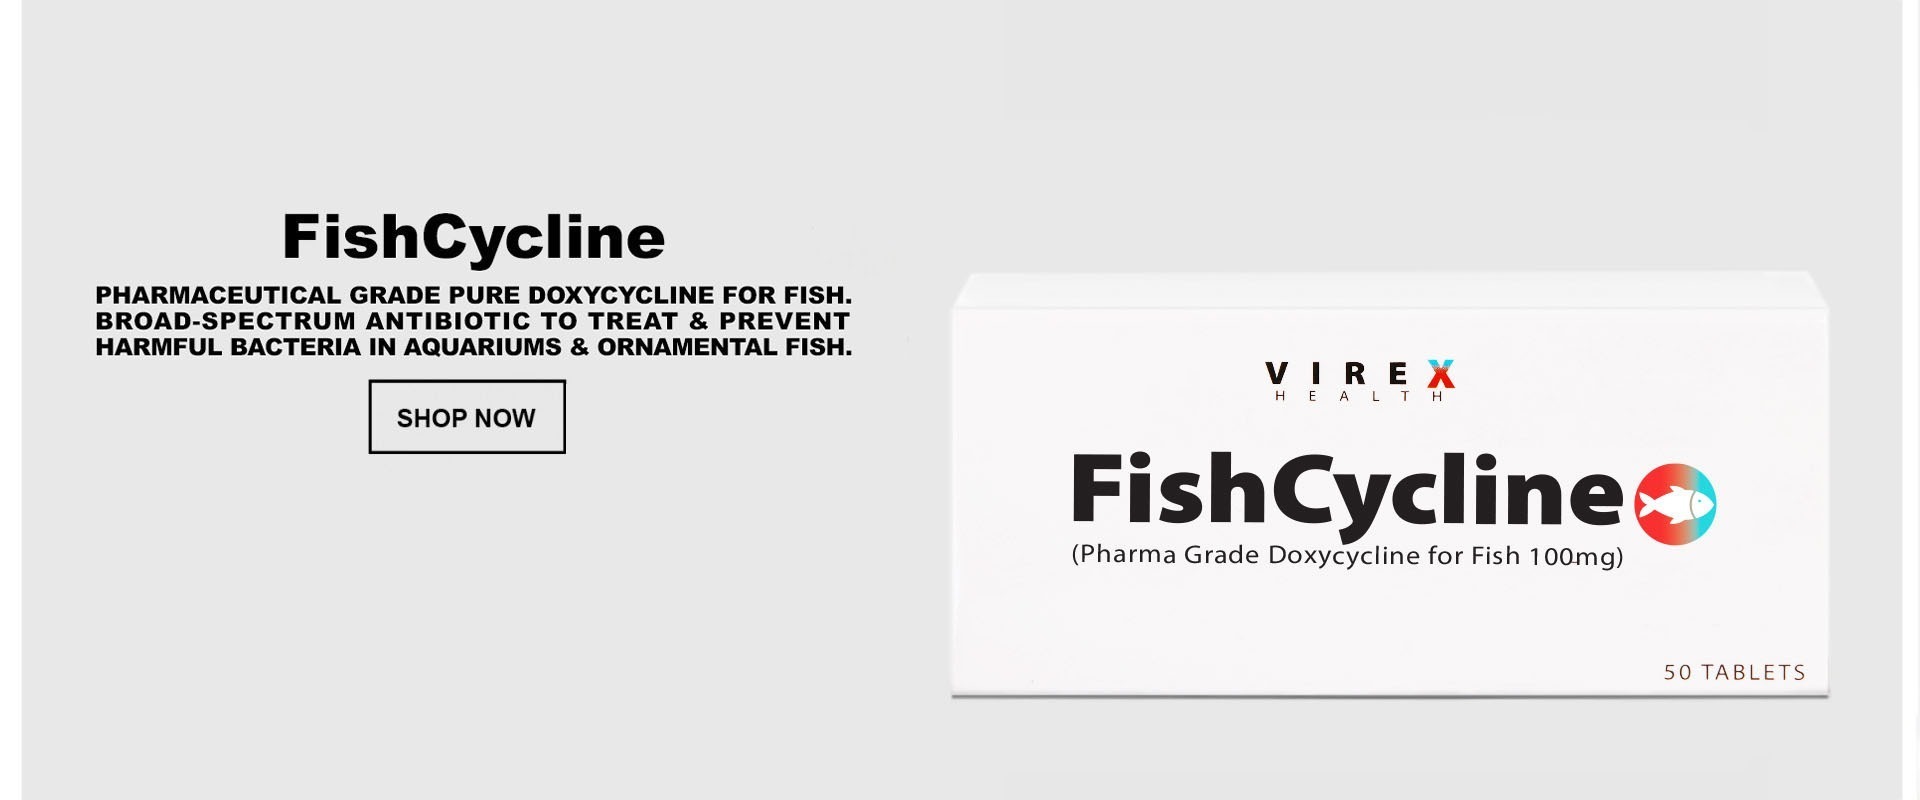 FishCycline